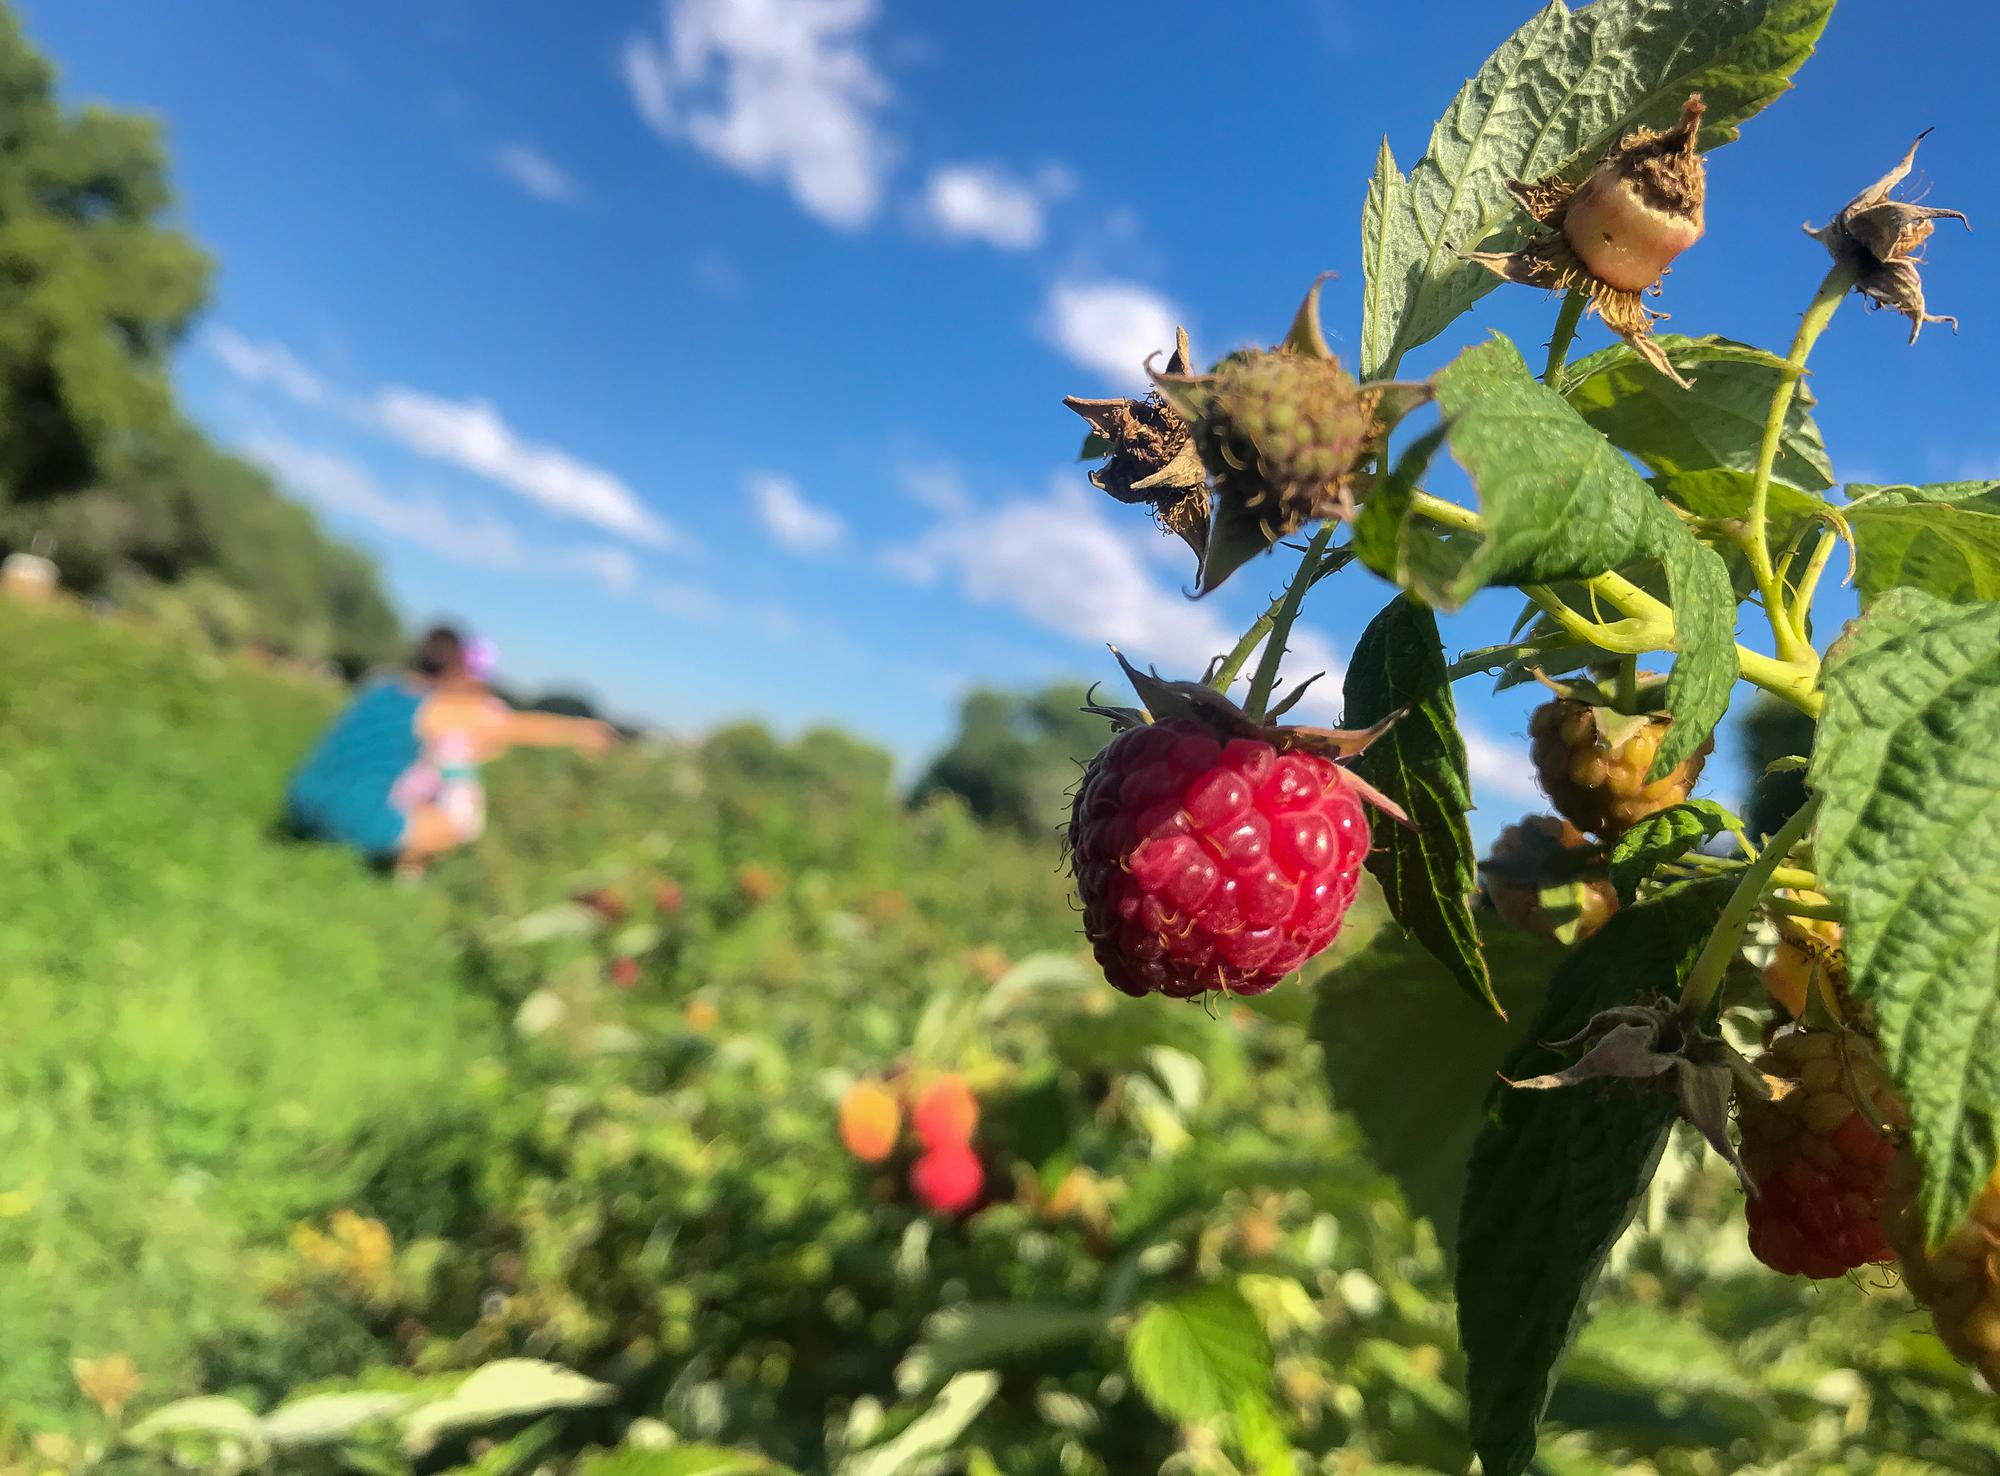 Raspberry pickers